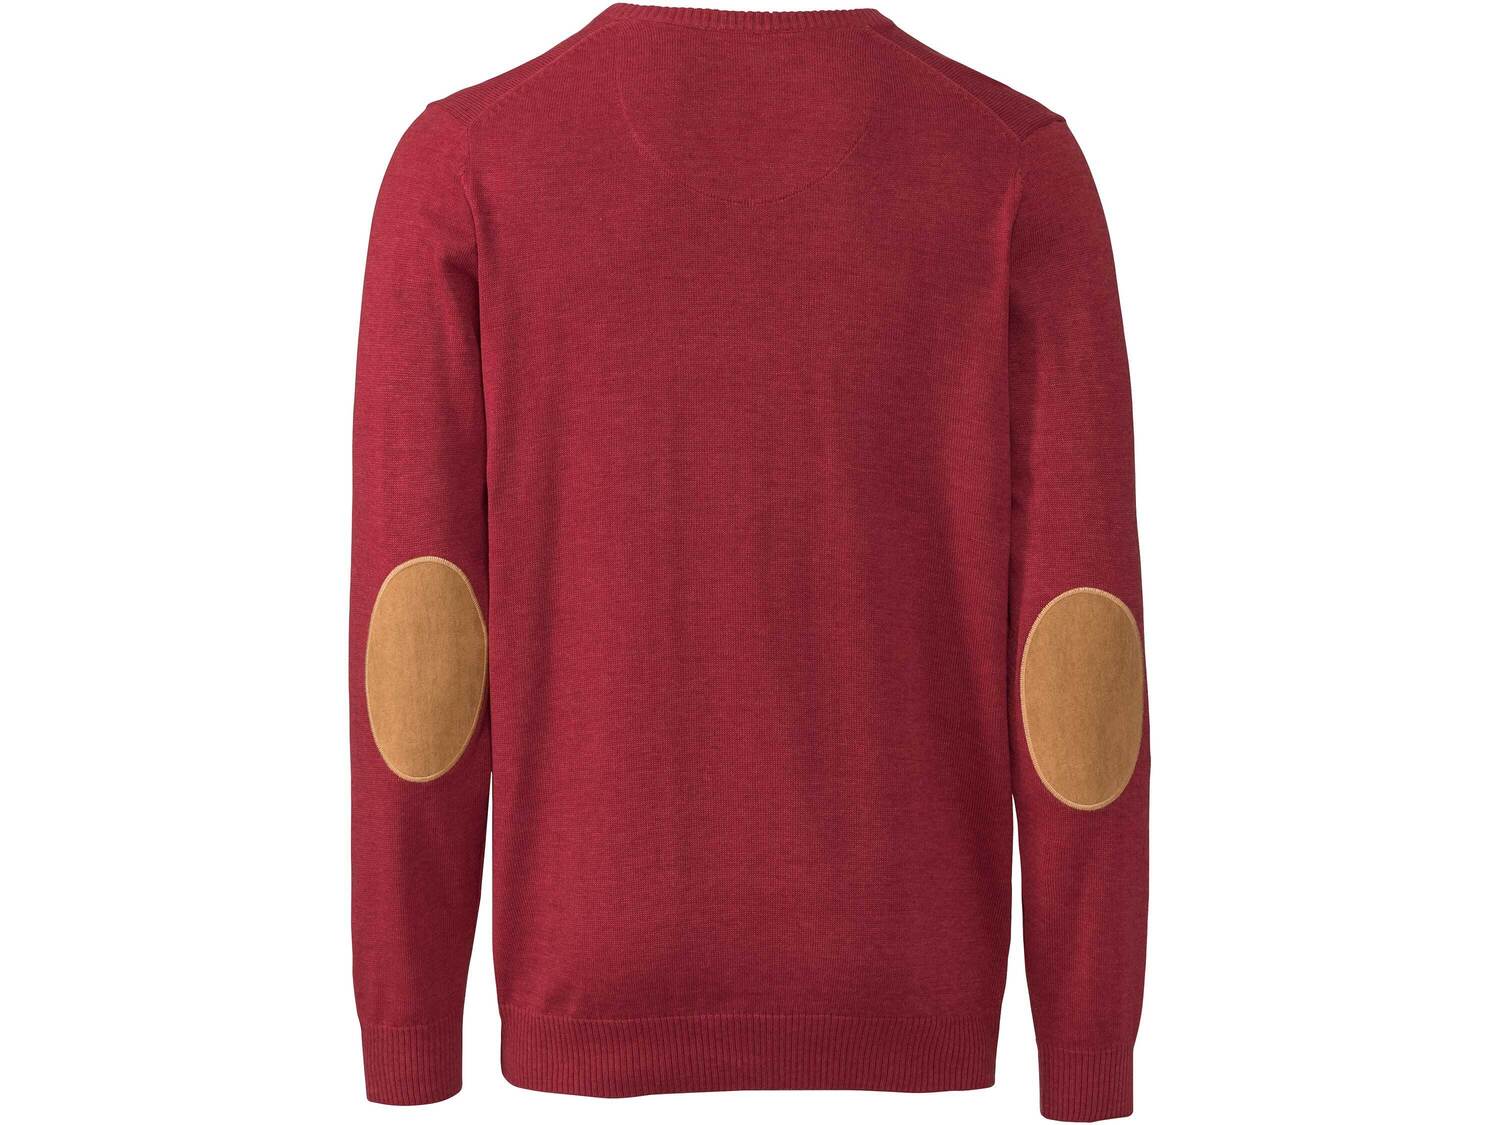 Sweter , cena 34,99 PLN 
- rozmiary: M-XL
- 50% bawełny, 50% poliakrylu
- modne ...